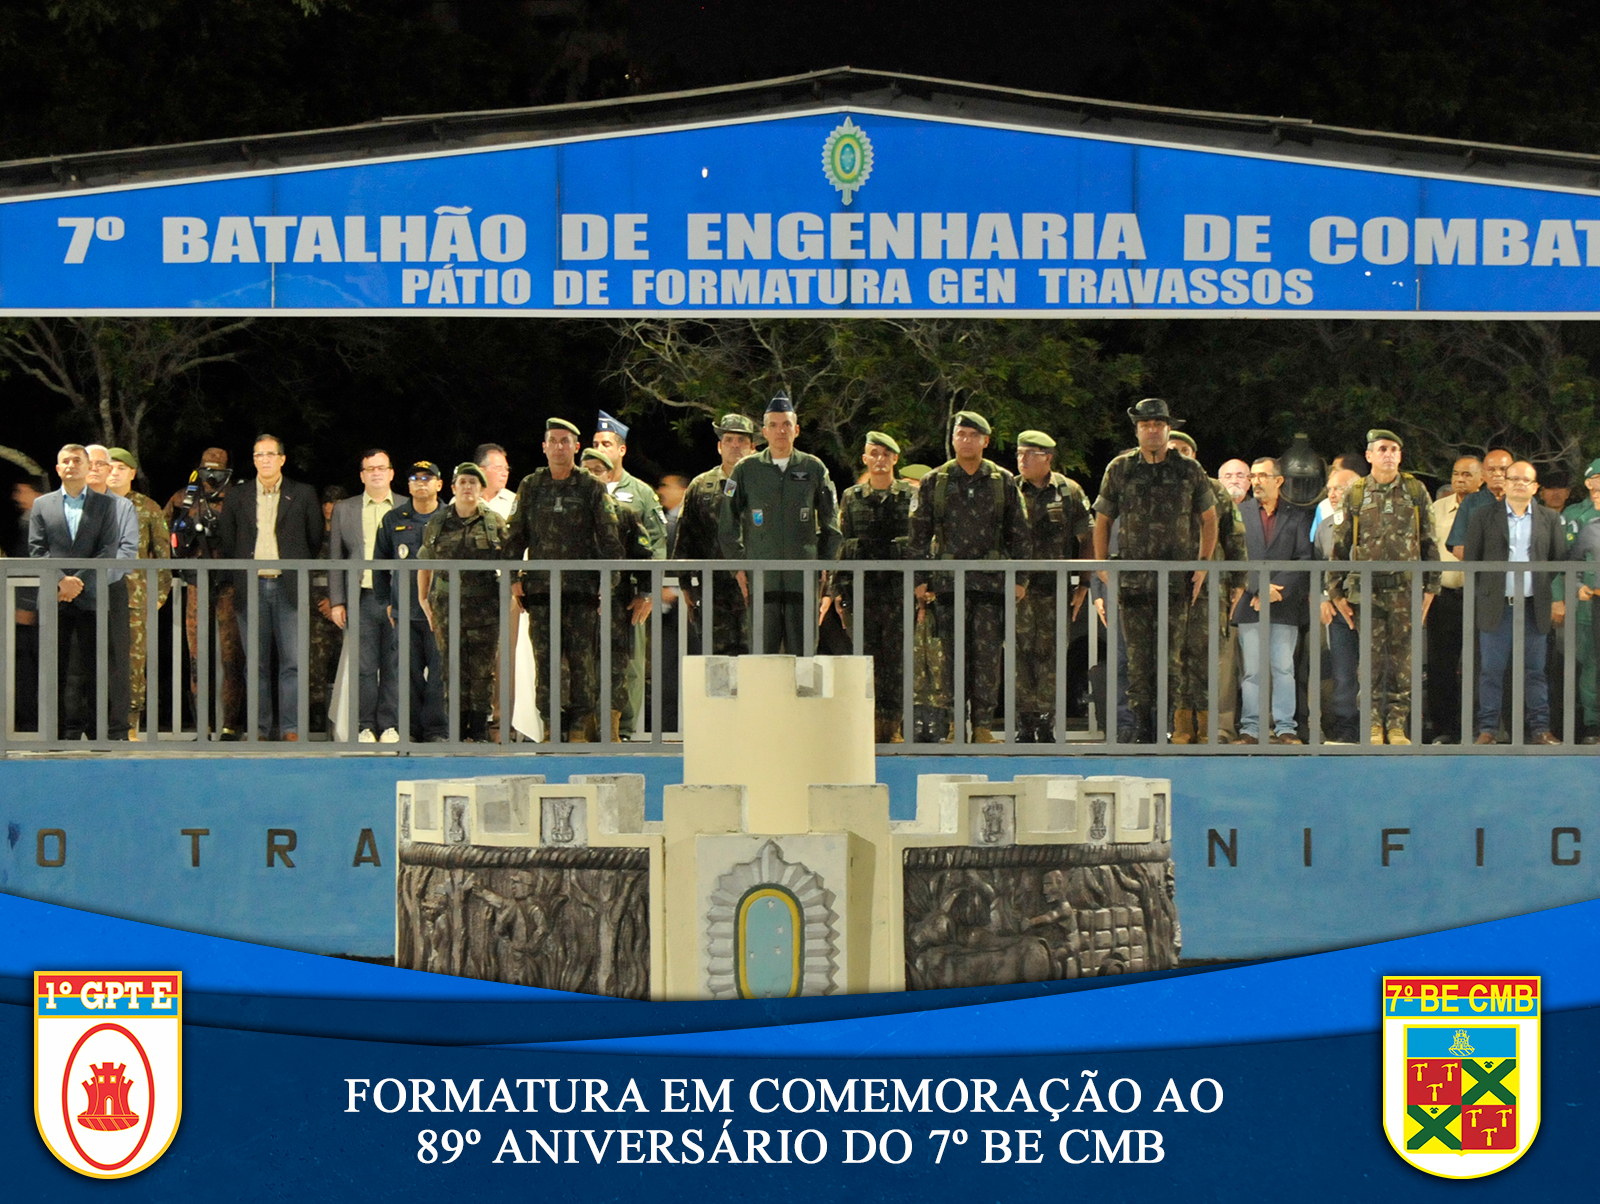 O 7º BATALHÃO DE ENGENHARIA DE COMBATE REALIZA FORMATURA EM COMEMORAÇÃO AO SEU 89º ANIVERSÁRIO DE CRIAÇÃO.